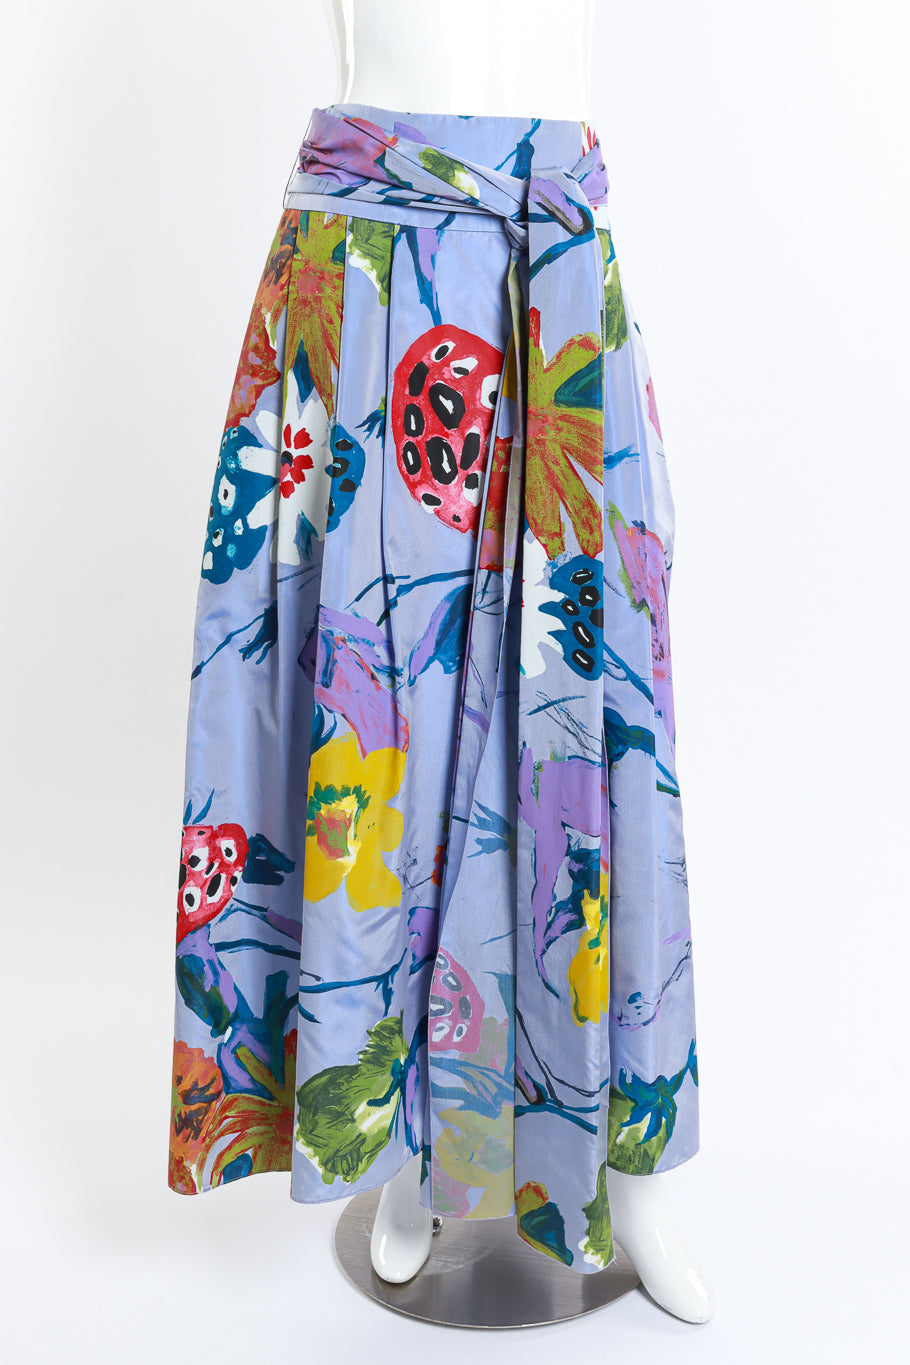 Vintage Christian Lacroix Floral Paint Print Skirt front on mannequin @recess la